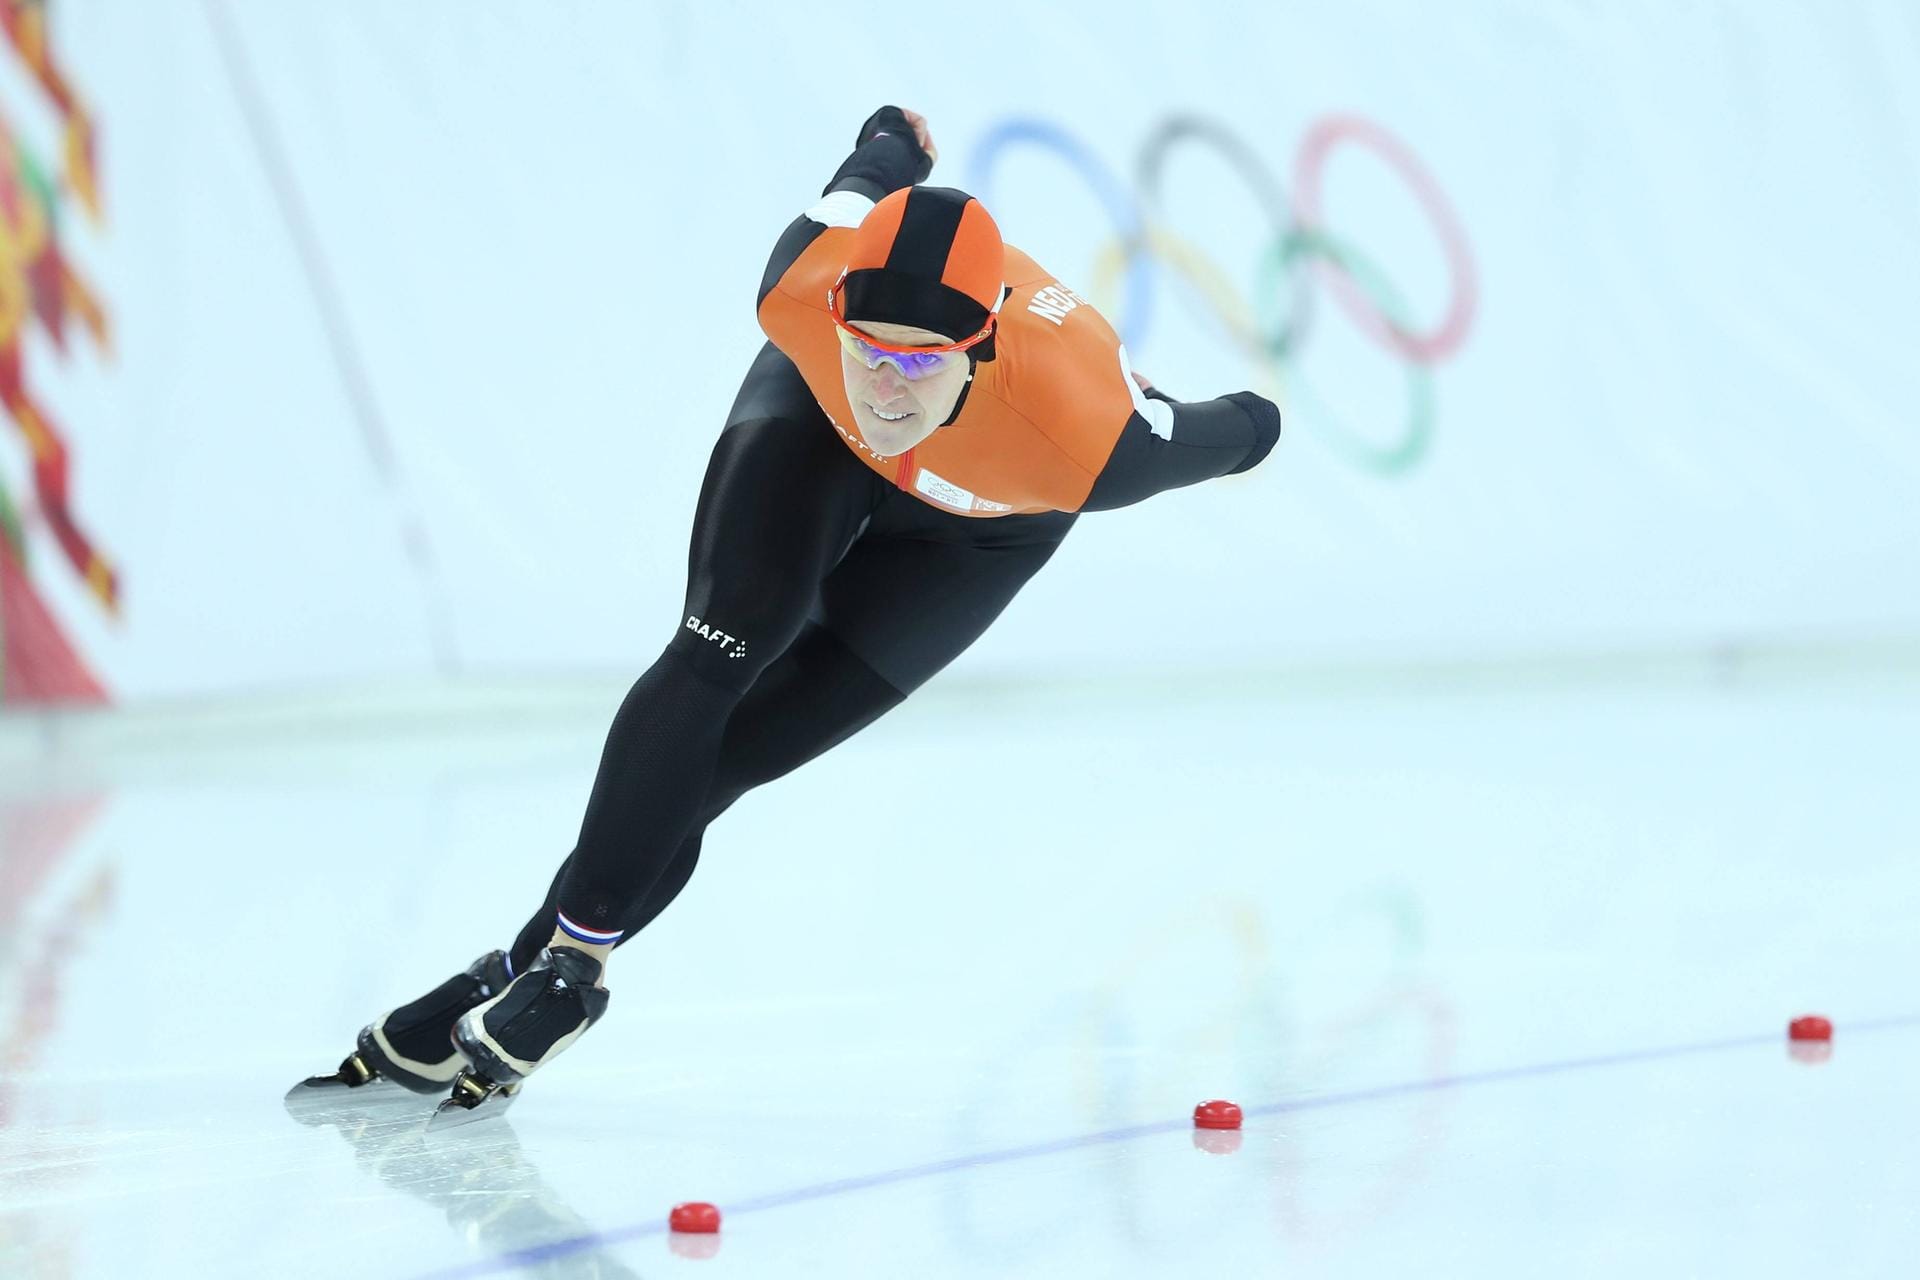 Platz 4: Ireen Wüst (Eisschnelllauf, Niederlande) – 12 Medaillen: 6x Gold / 5x Silber / 1x Bronze zwischen 2006 und 2022.